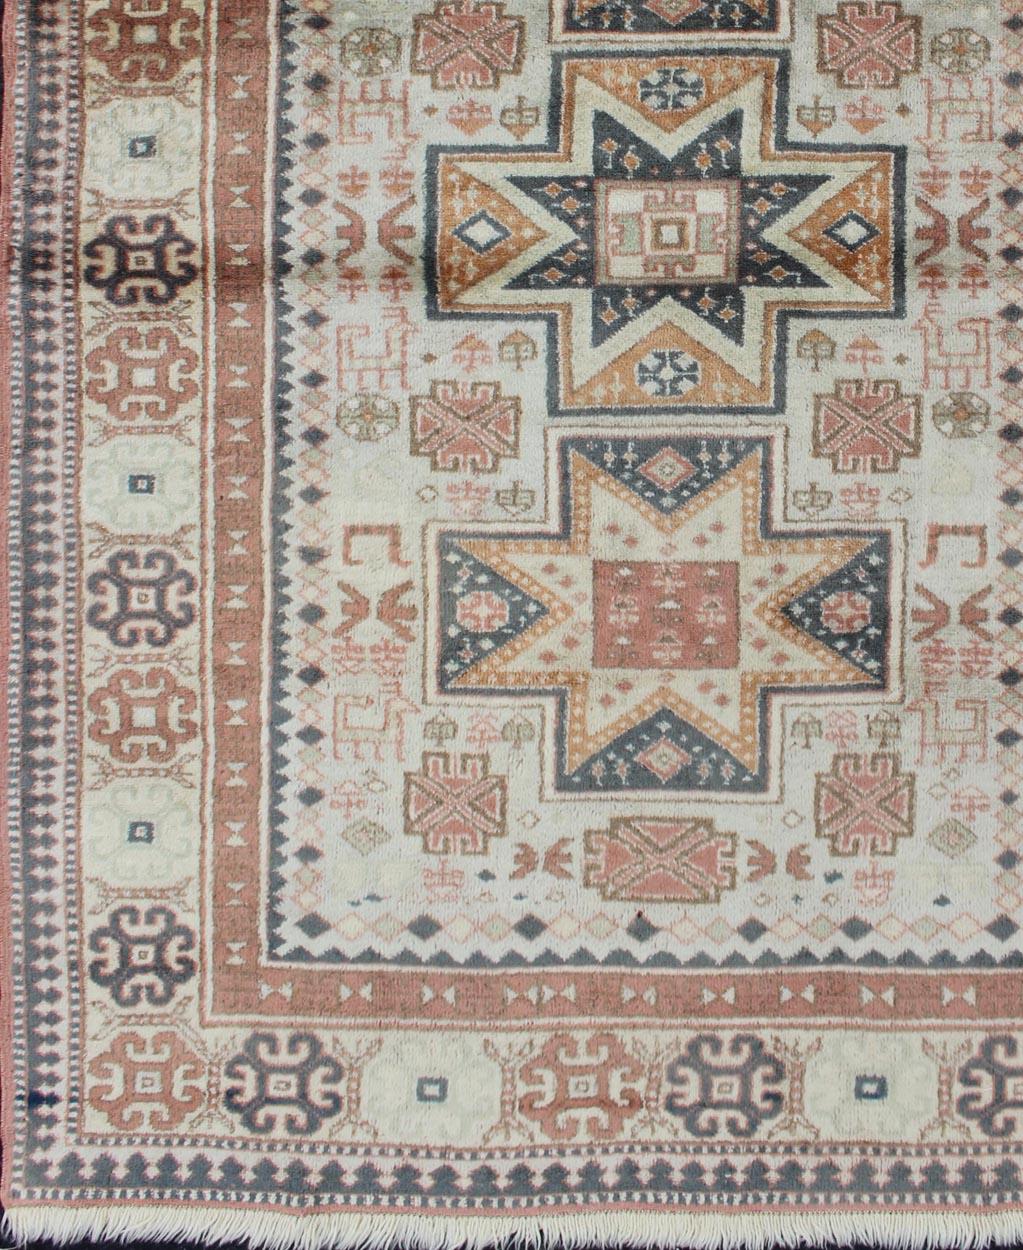 Handgeknüpfter türkischer Vintage-Teppich mit Stammesmedaillons und Design, Keivan Woven Arts /  teppich 16-0302, Herkunftsland / Art: Türkei / Oushak, um 1960

Dieser Tribal-Teppich aus der Türkei zeichnet sich durch ein Tri-Medaillon-Muster aus,